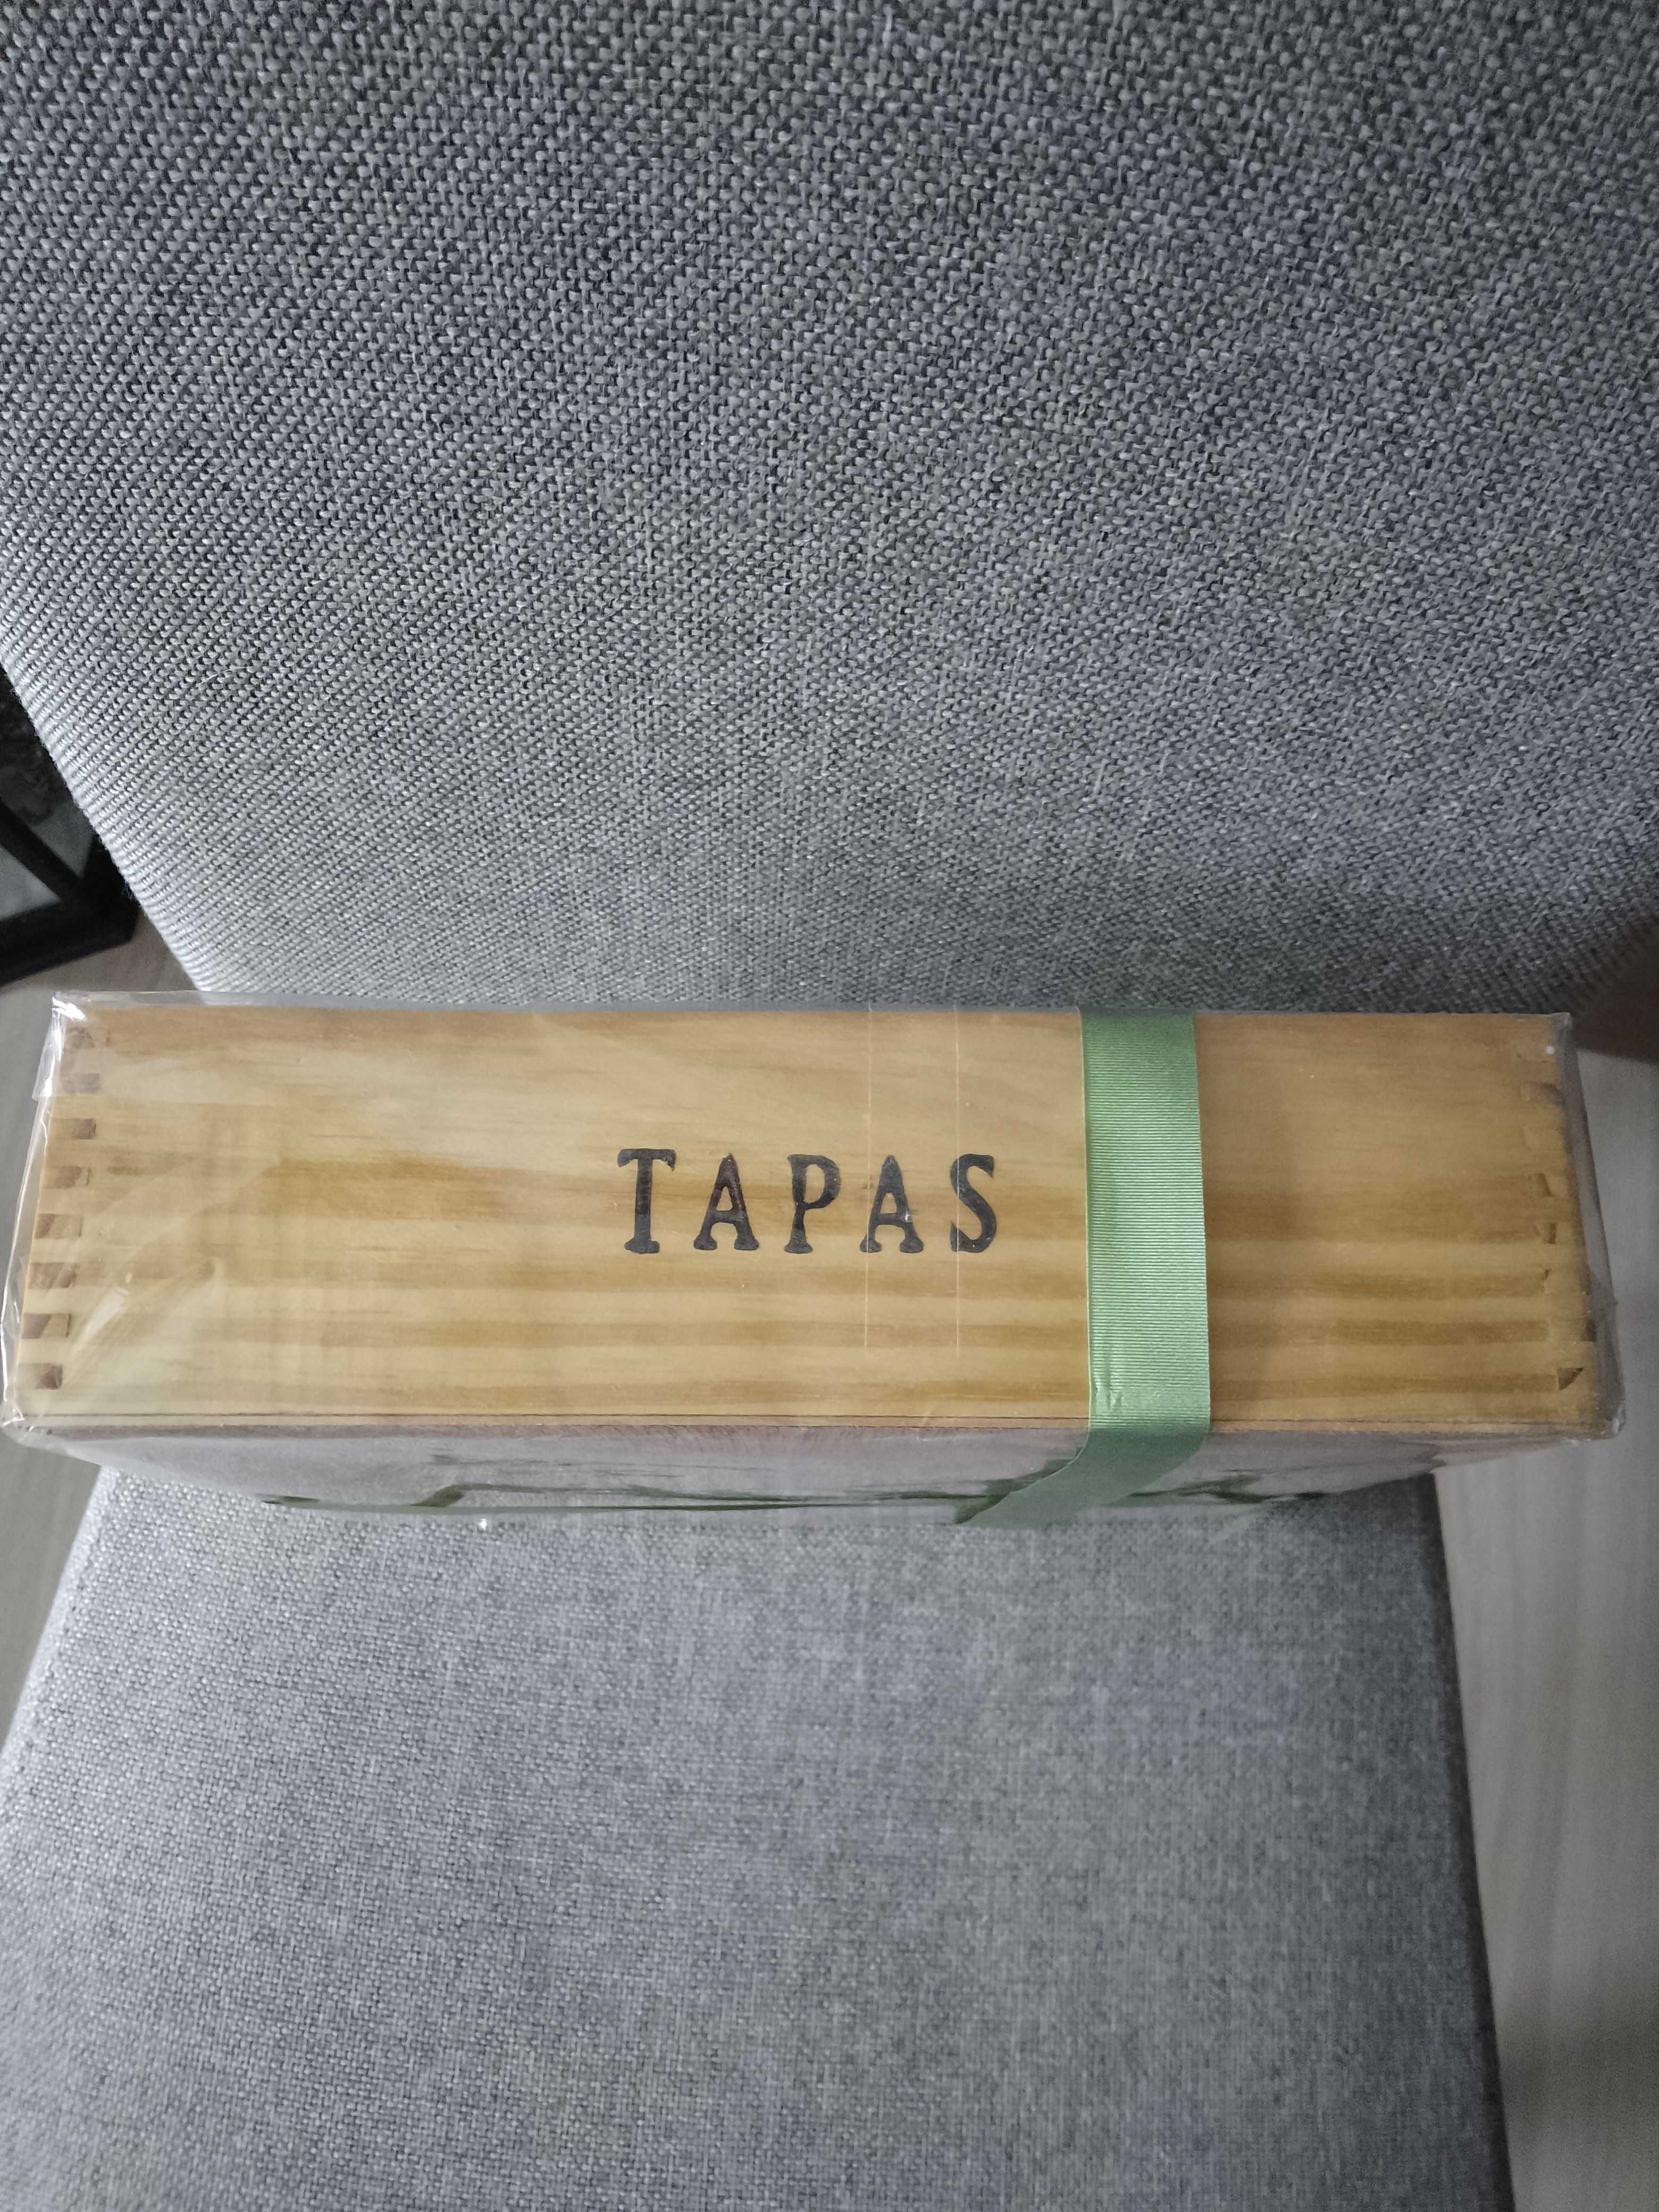 Zestaw do TAPAS z Hiszpanii nowy zestaw prezentowy